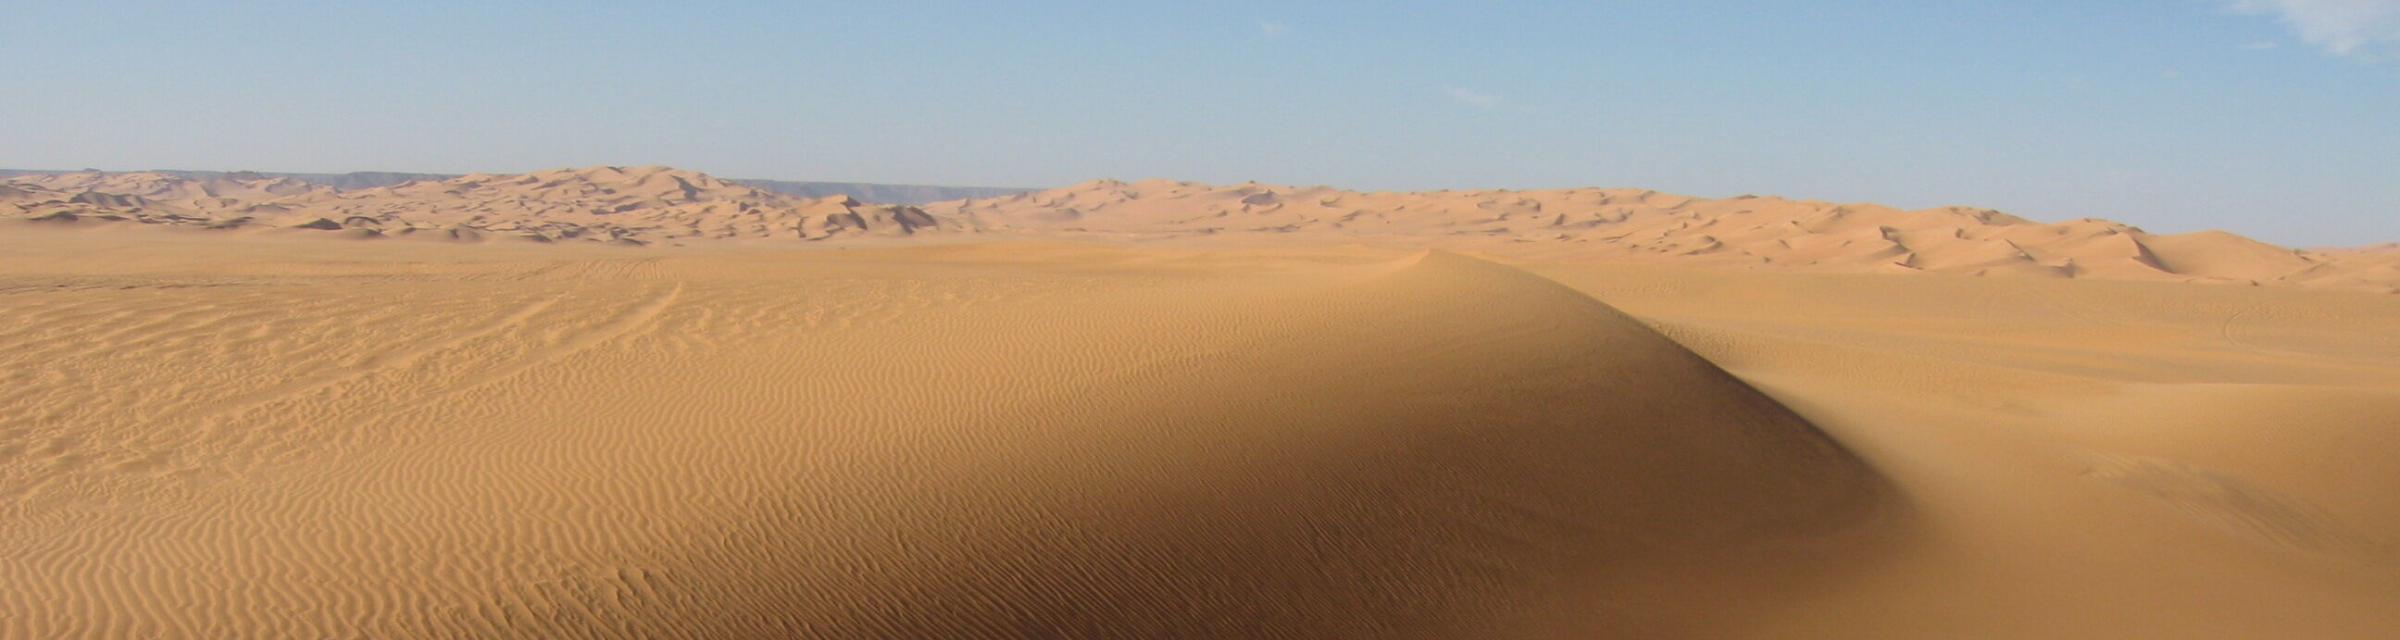 A sandy landscape.